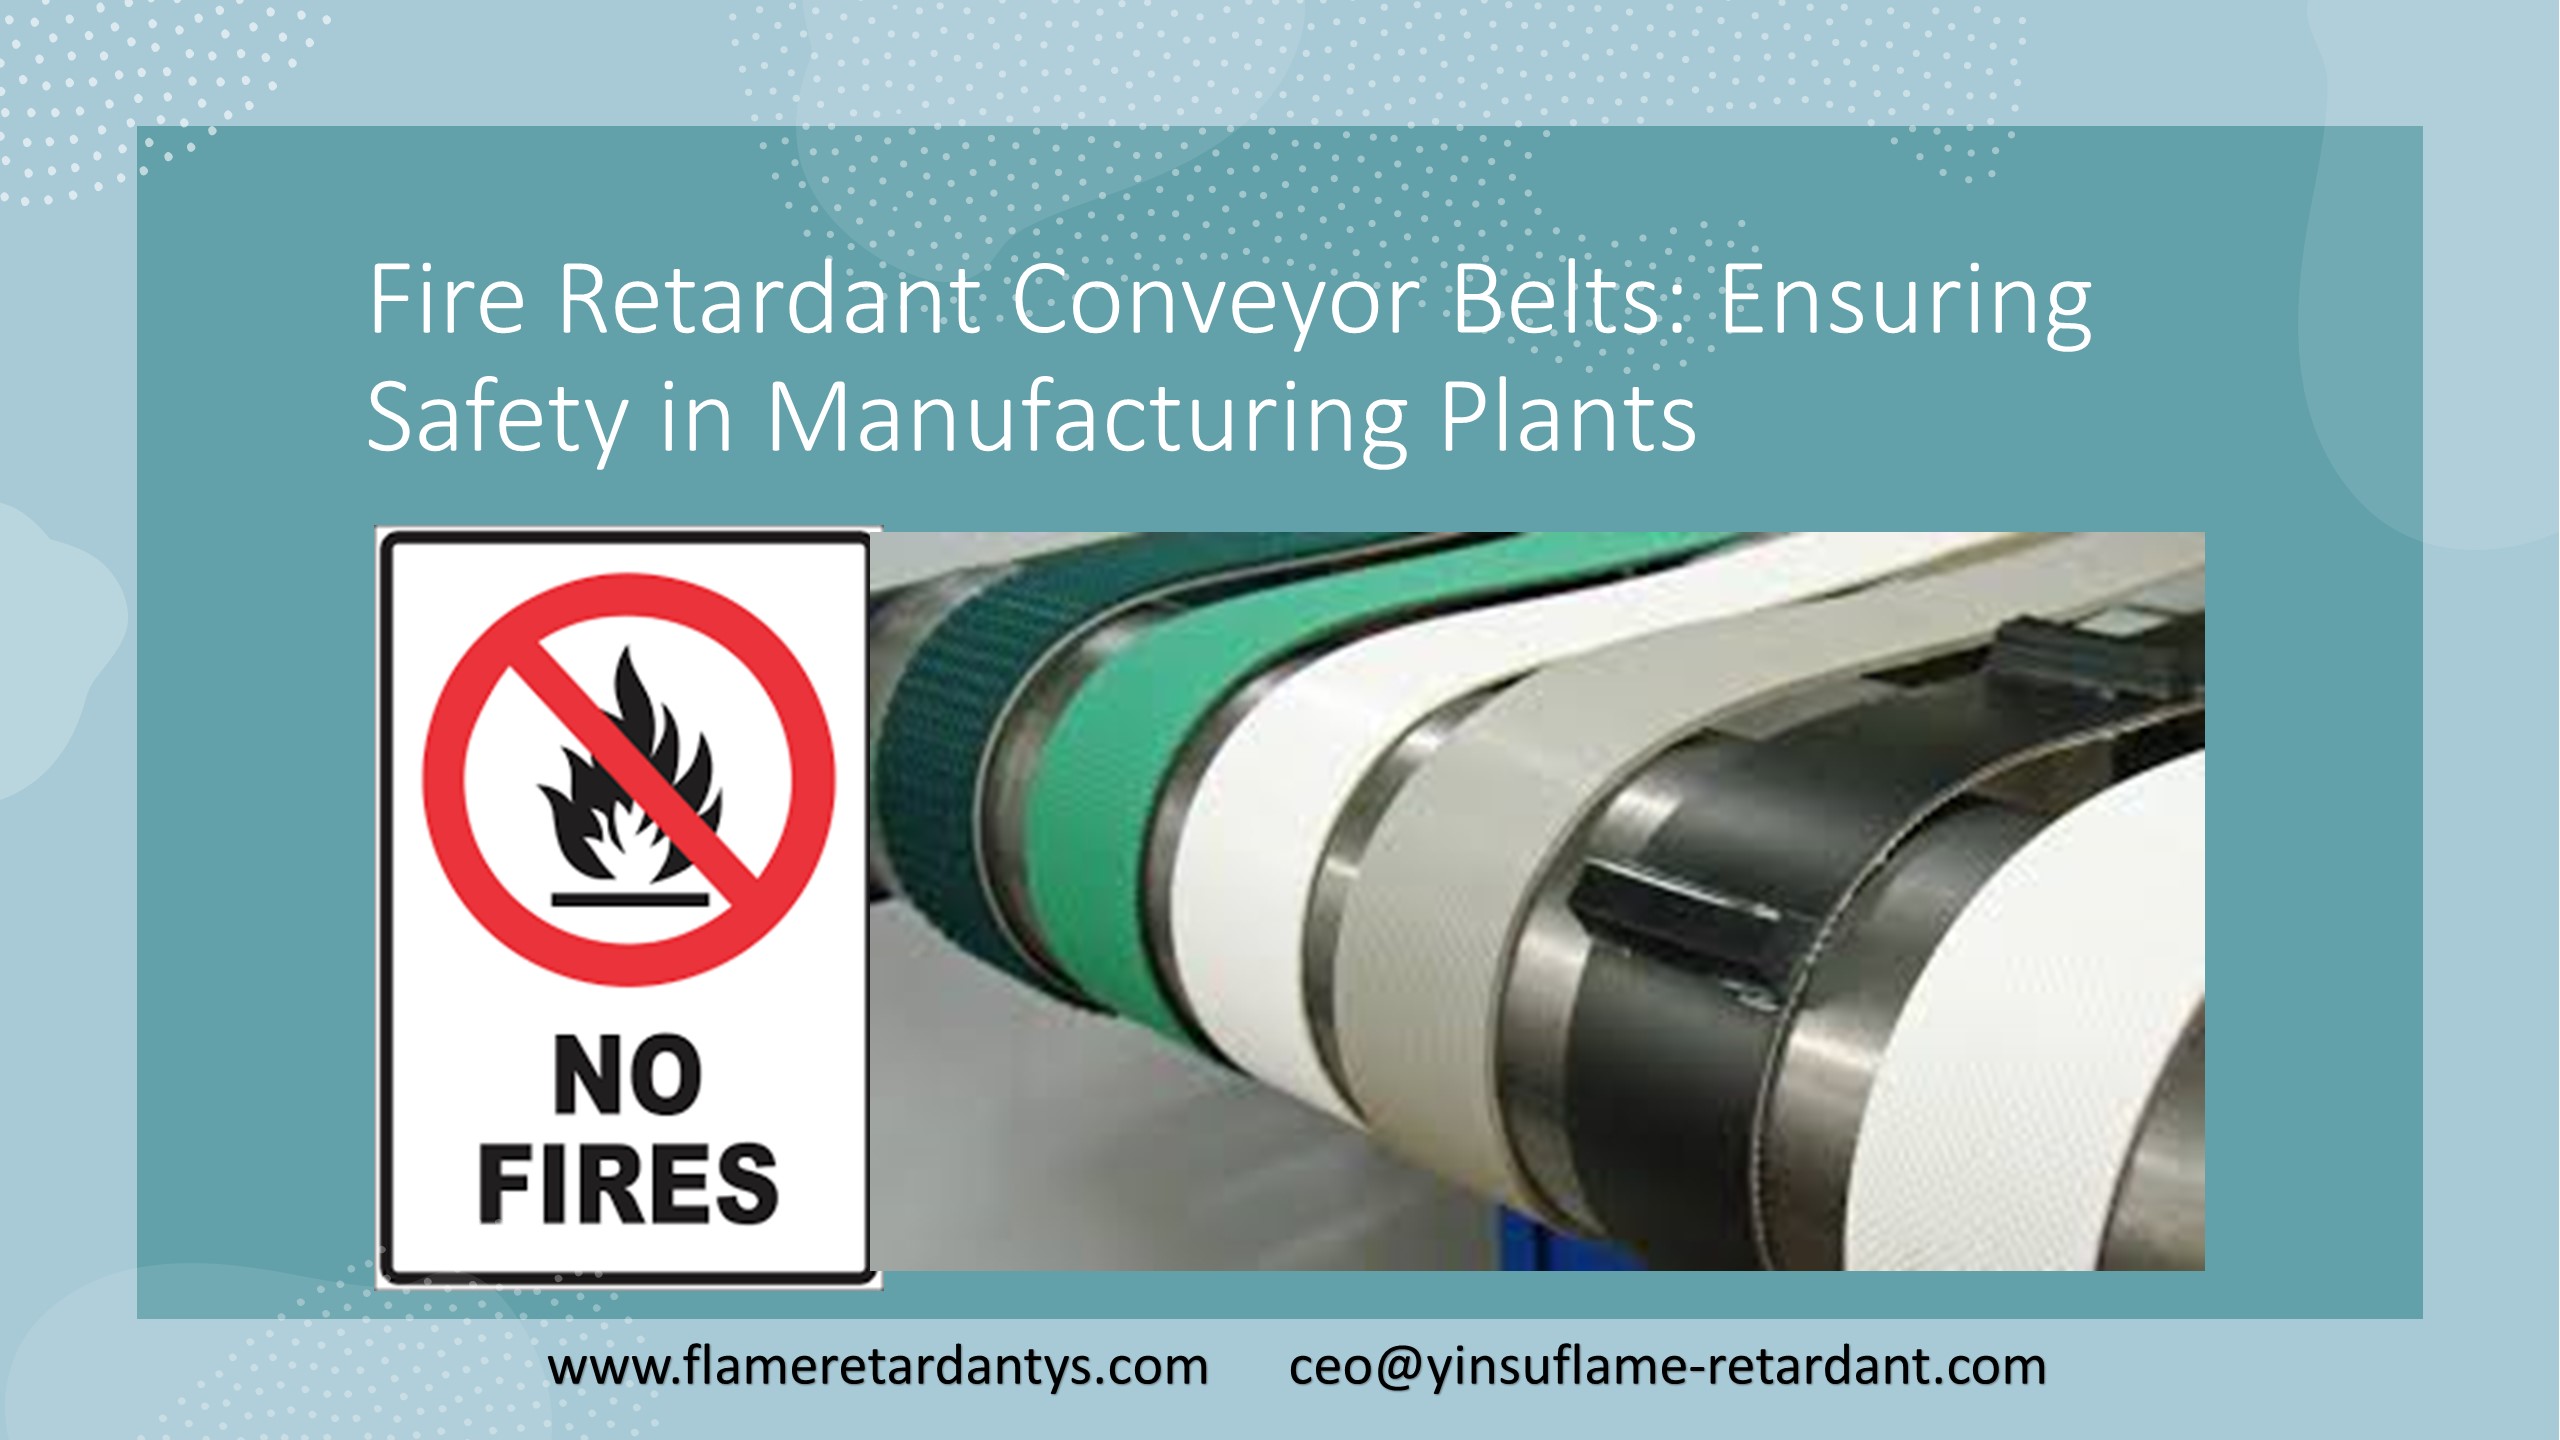 Огнезащитные конвейерные ленты: обеспечение безопасности на производственных предприятиях